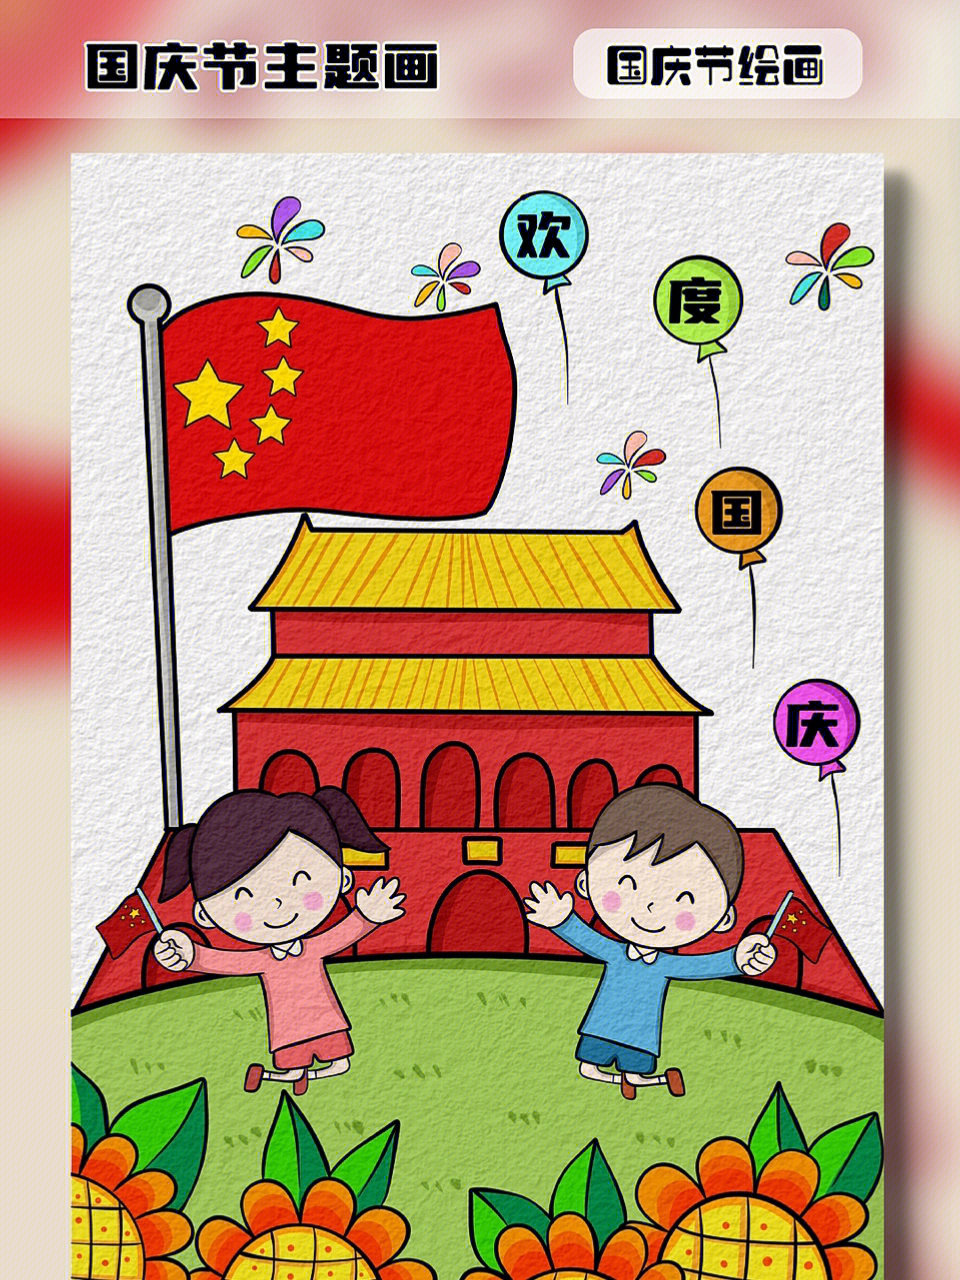 还有几天就是国庆节了,一起来画一幅欢度国庆的幼儿简笔画吧#国庆节